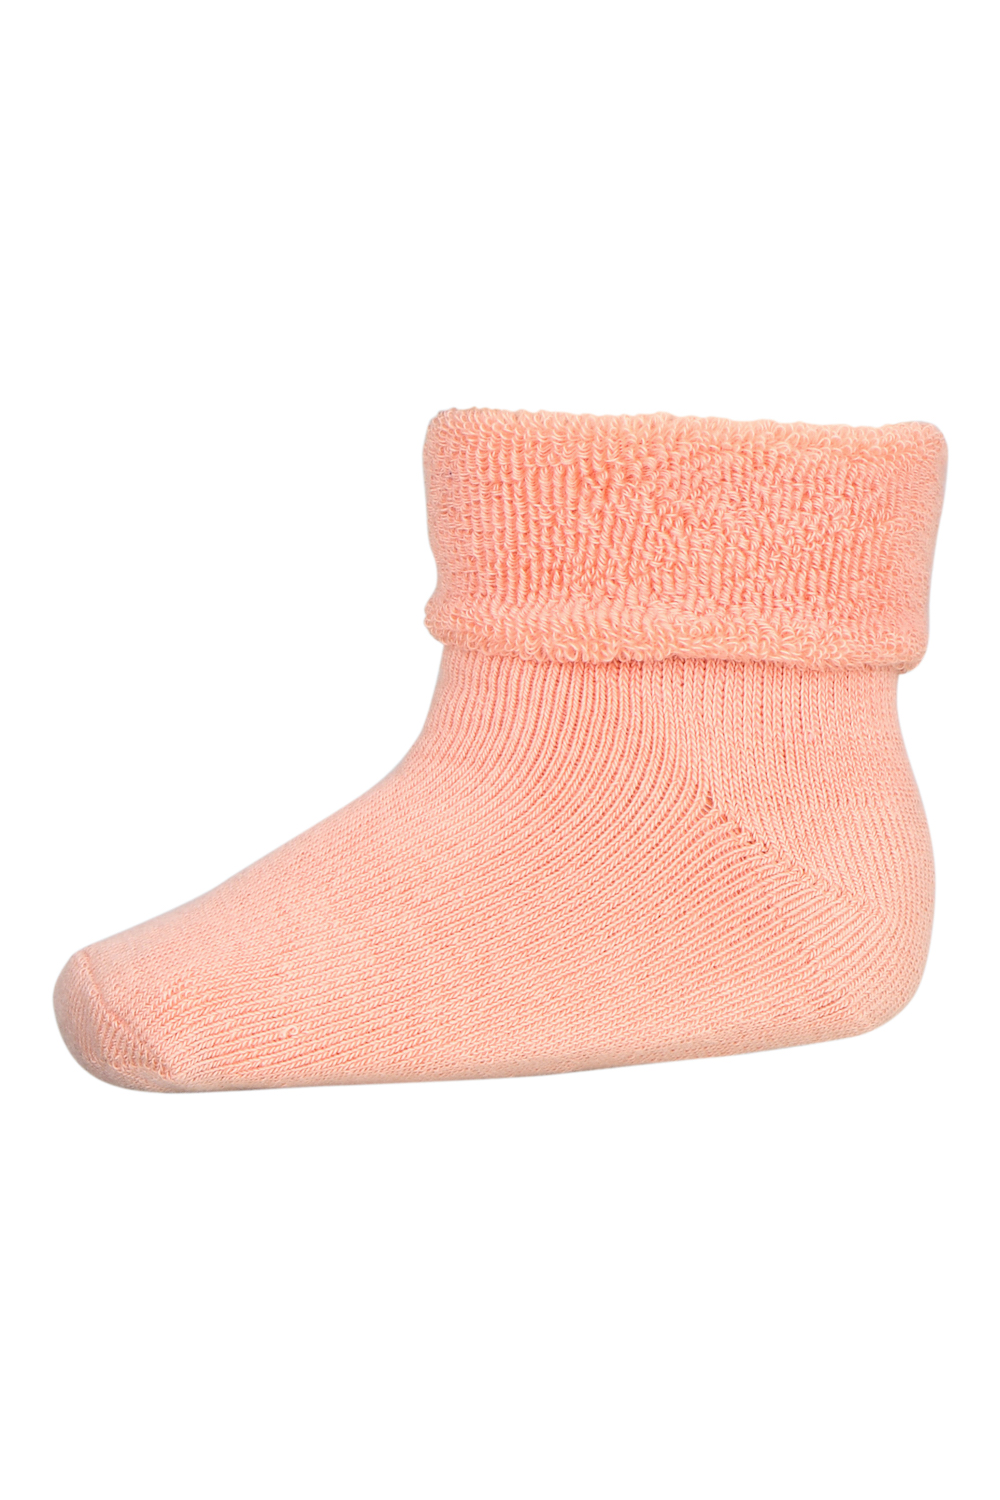 moeilijk Verleiding Dakraam MP Denmark cotton terry socks guava babysokjes badstof sokken roze - Minipop